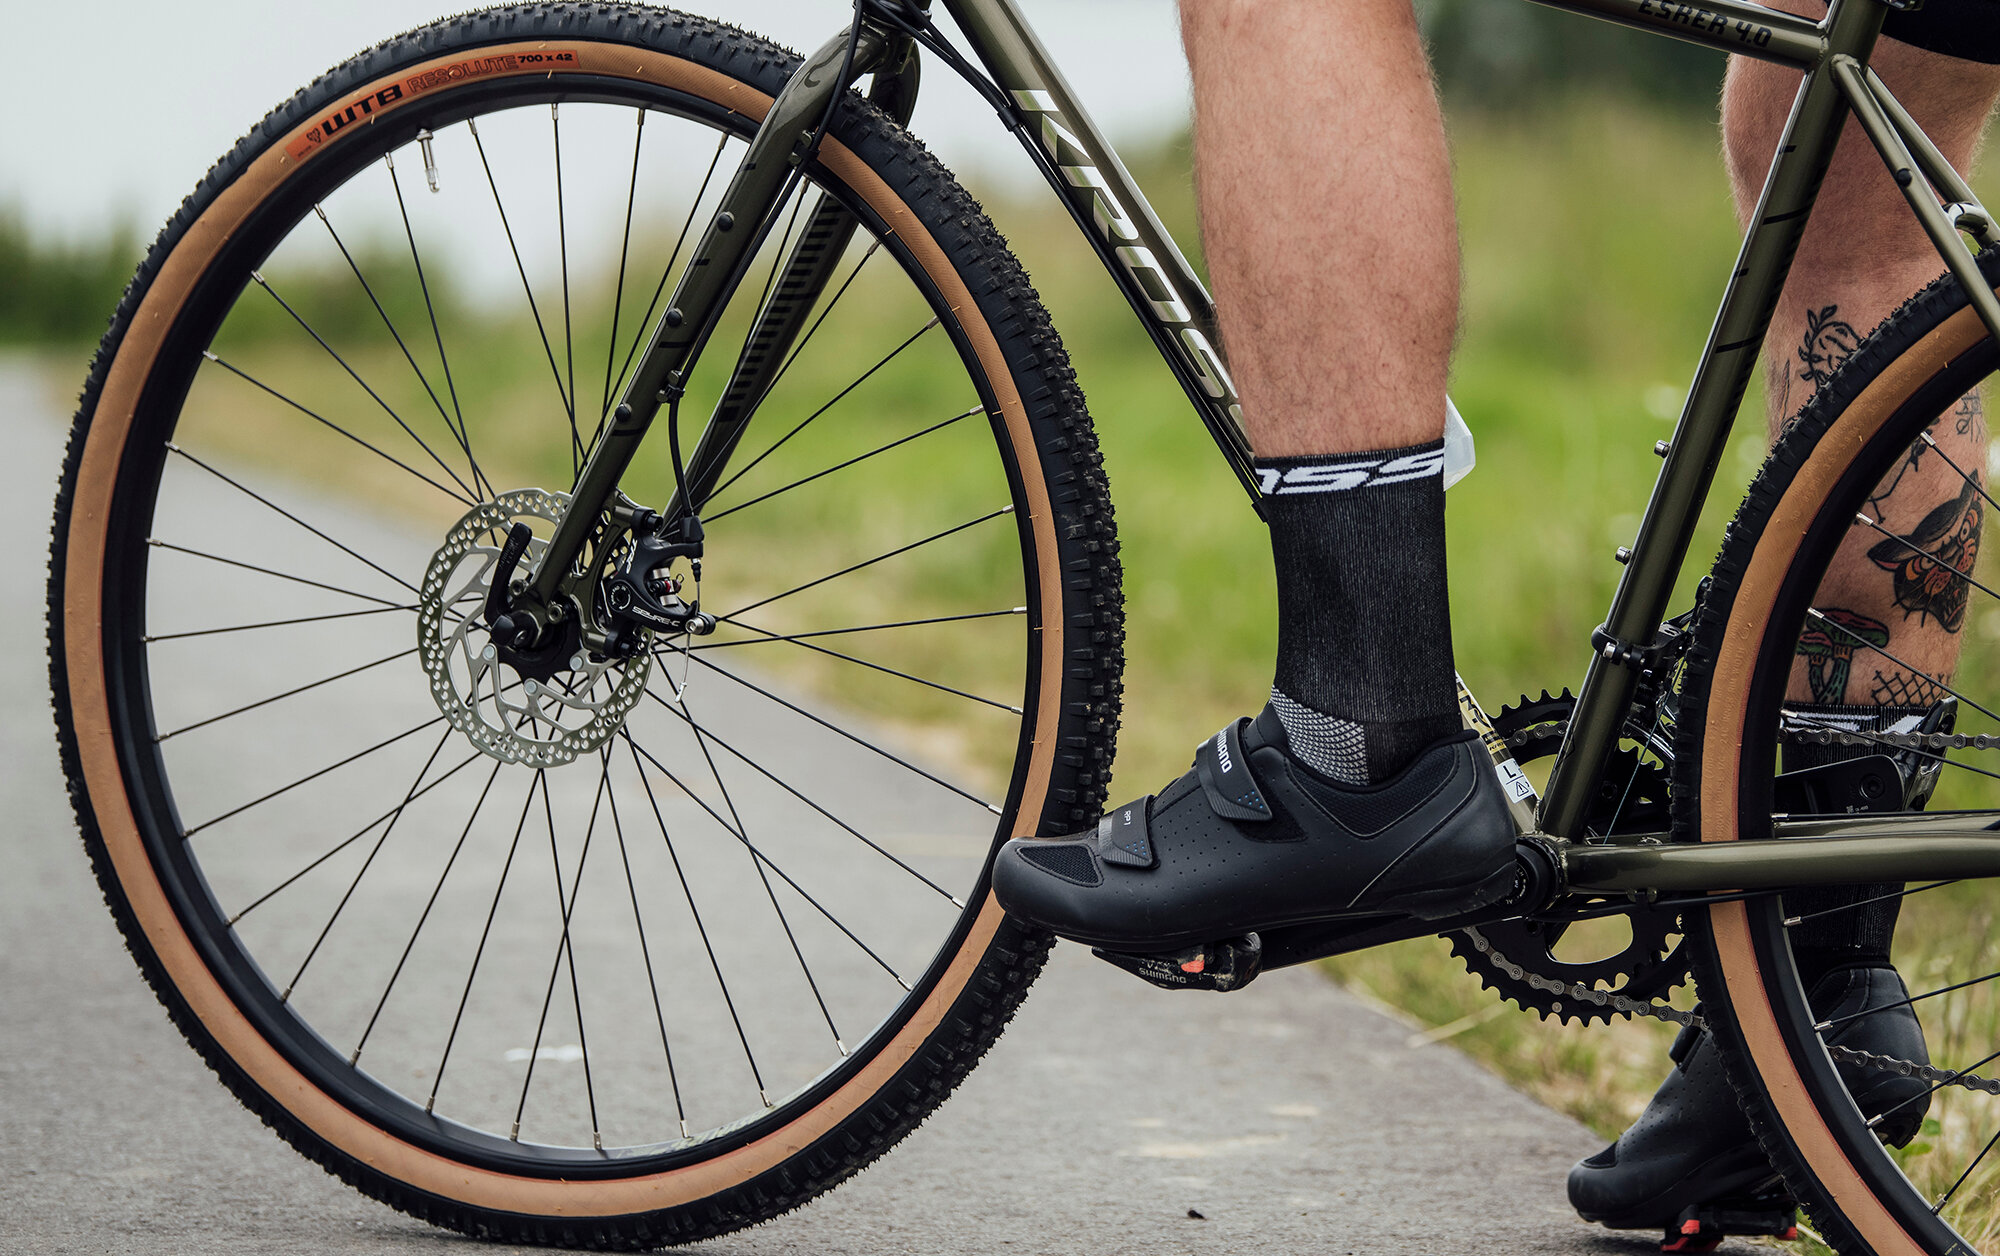 Buty kolarskie dla jeżdżących na rowerze do pracy - jakie będą najlepsze?>>